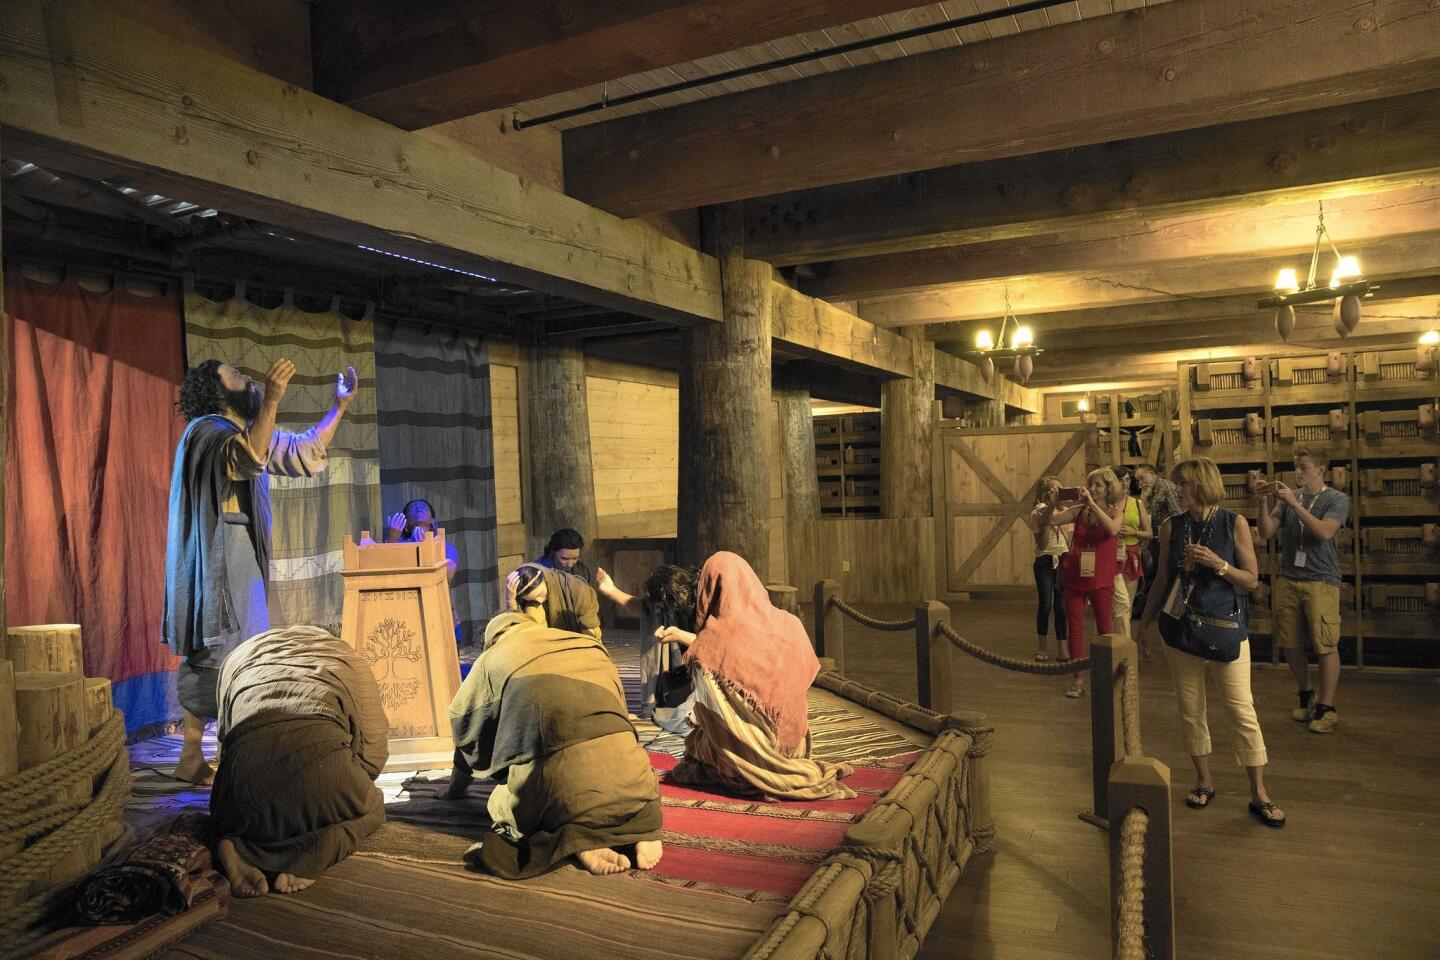 Inside the ark